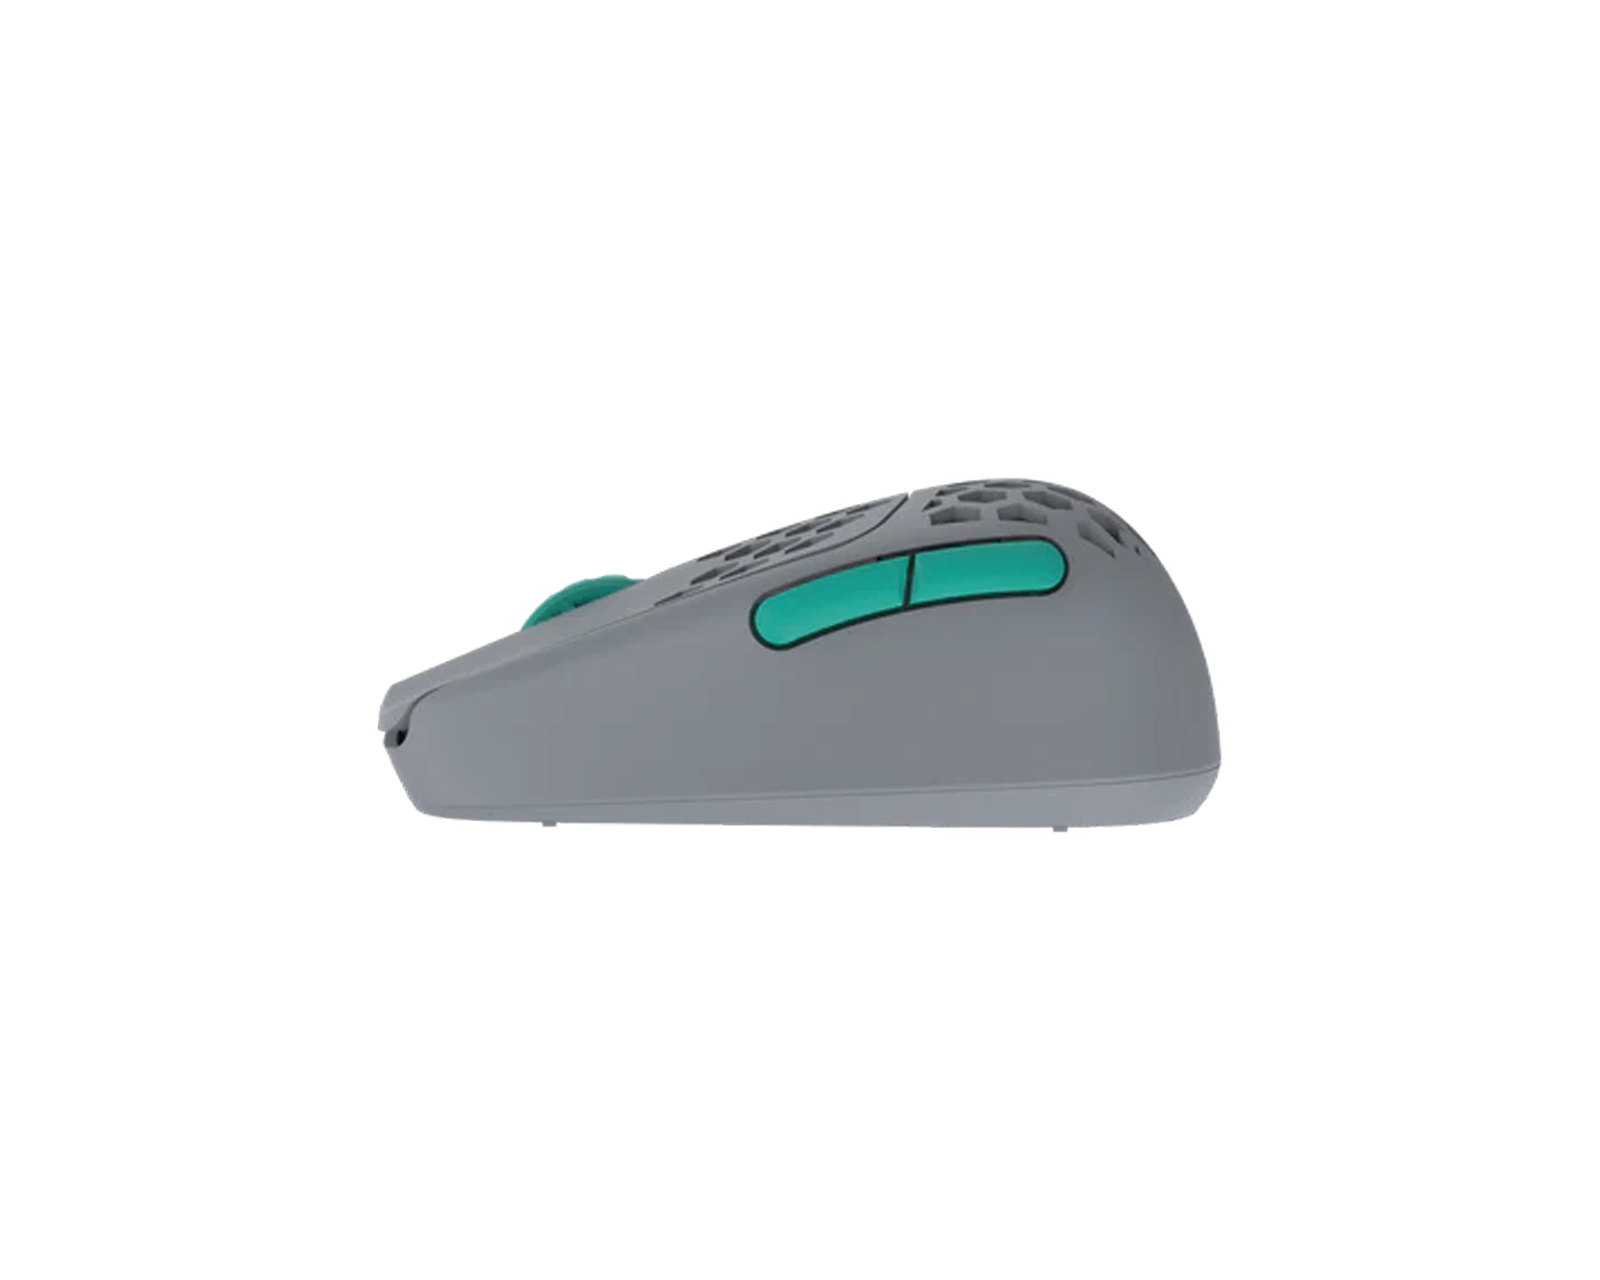 G-Wolves HSK Pro 4K Wireless Mouse Fingertip - Grey/Green